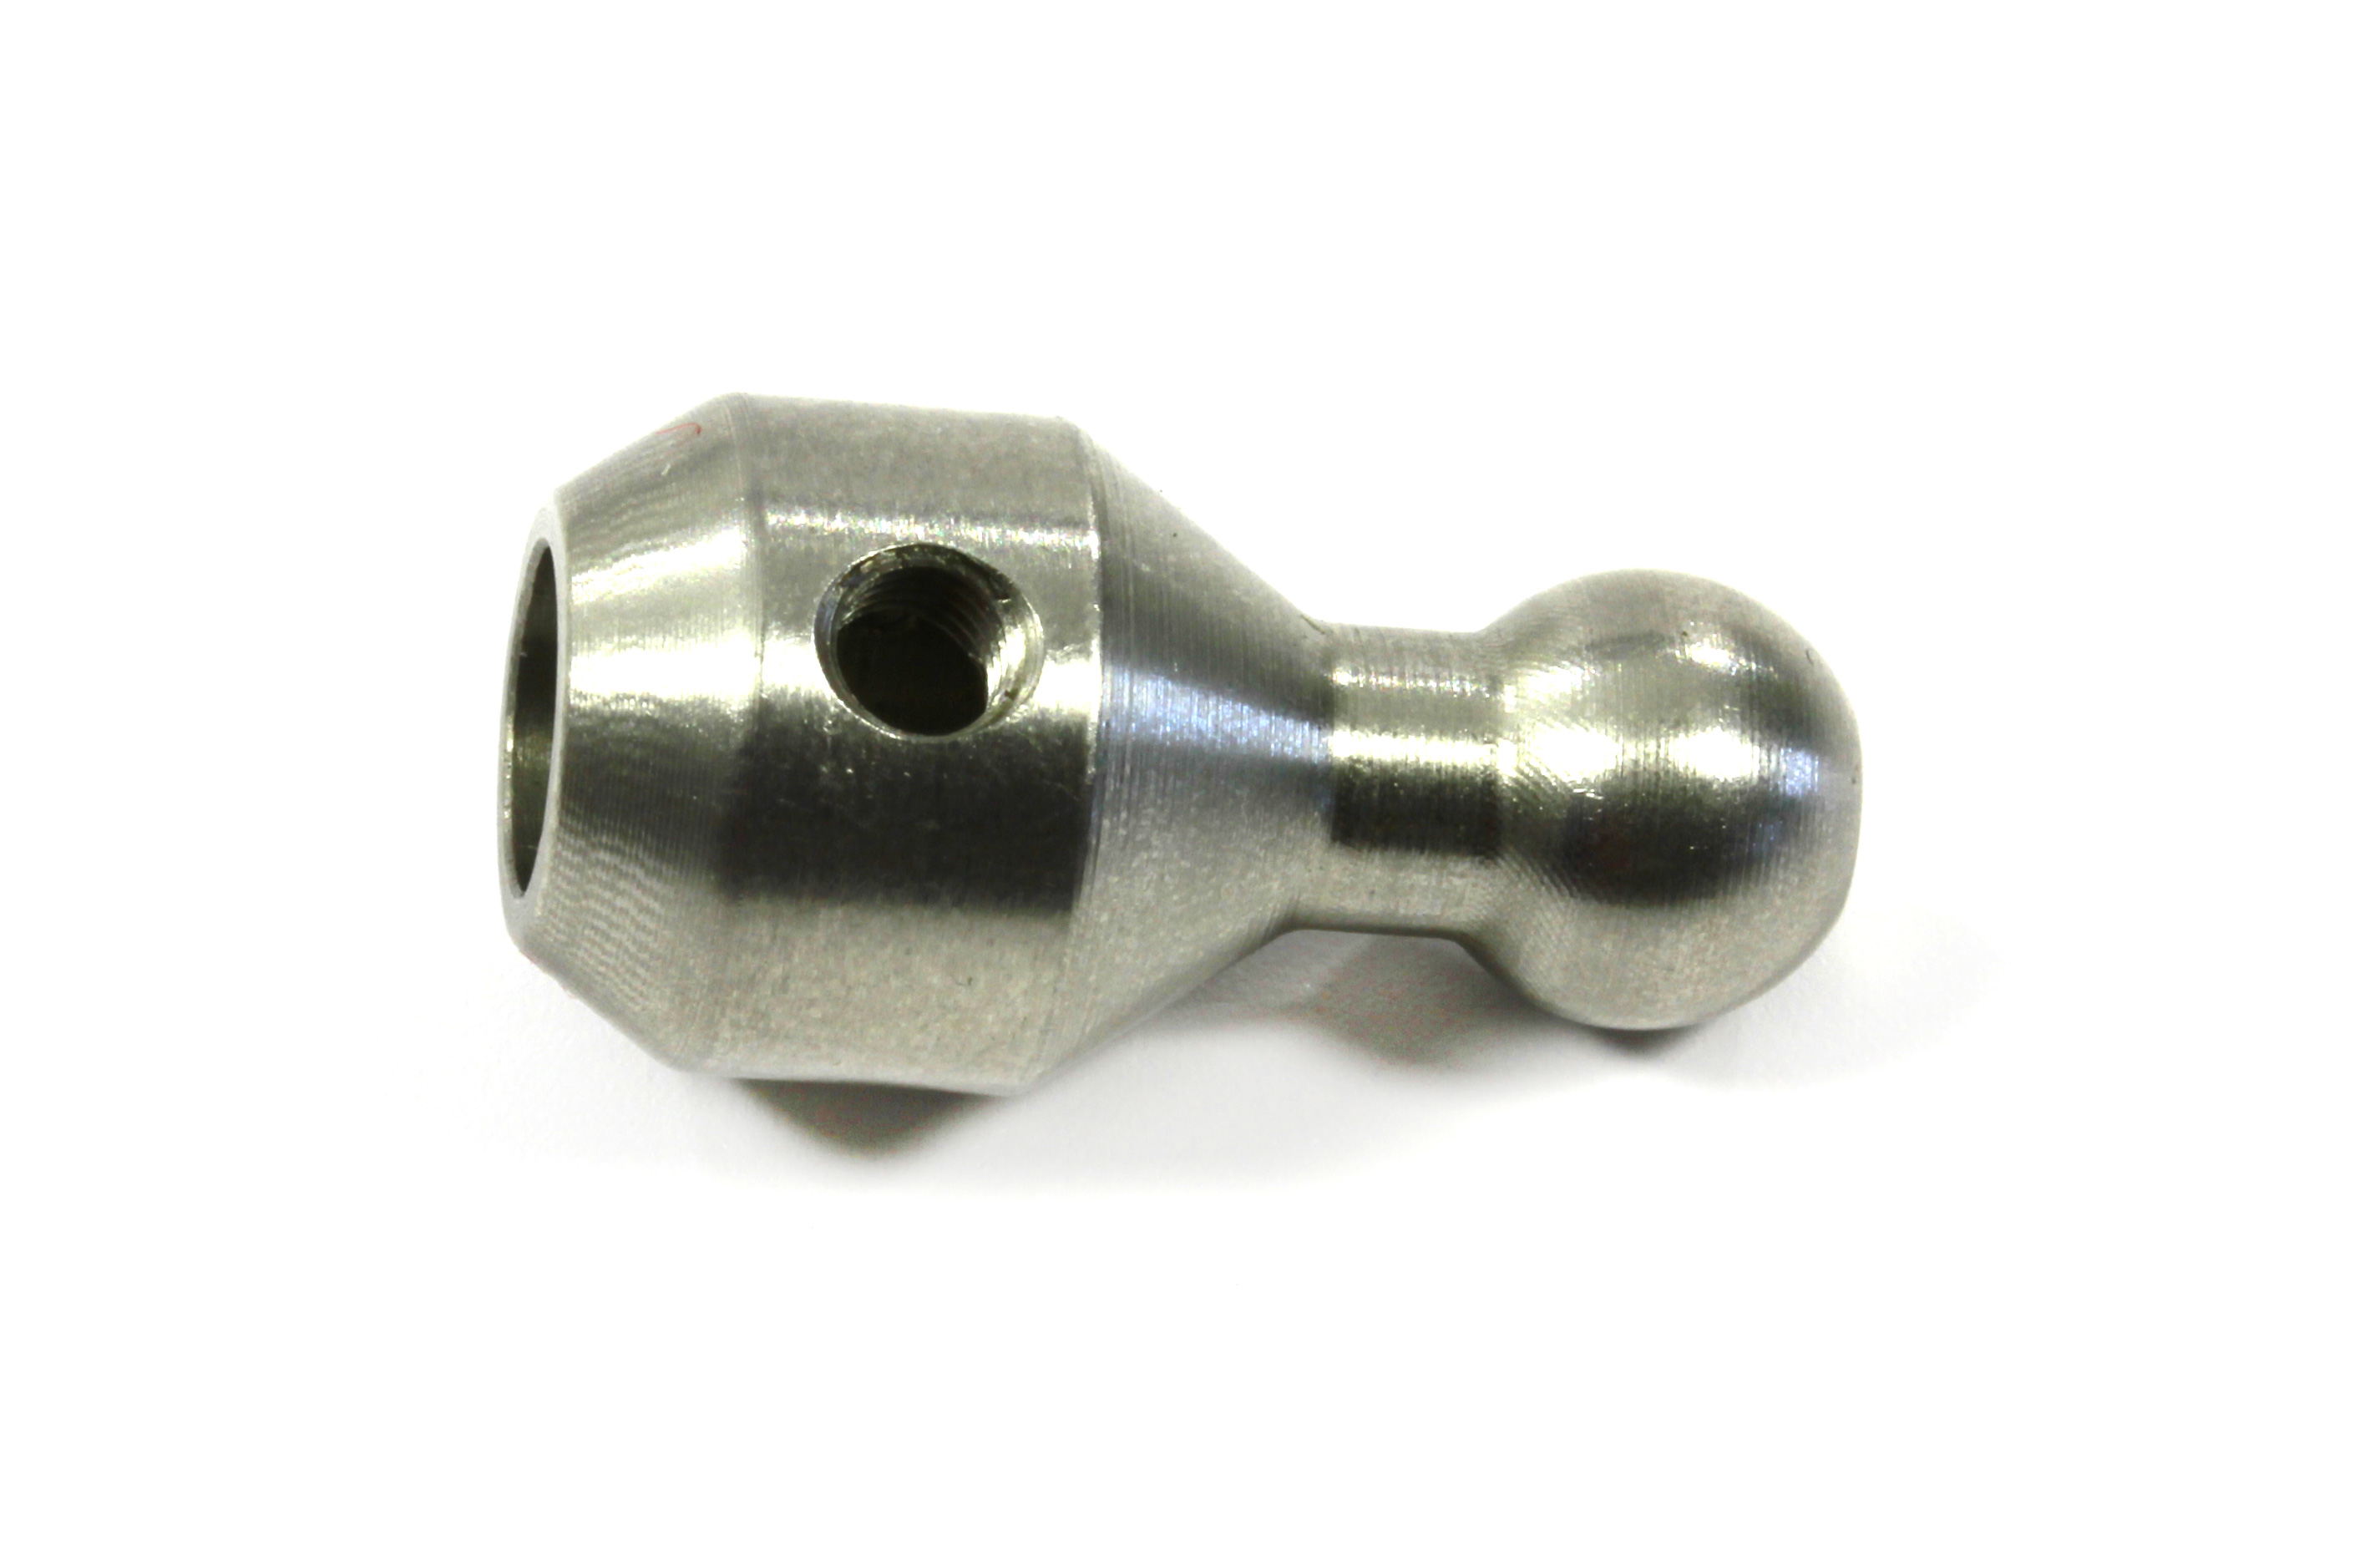 2012-135 Mecatech Stabi Zapfen Durchmesser 5 mm